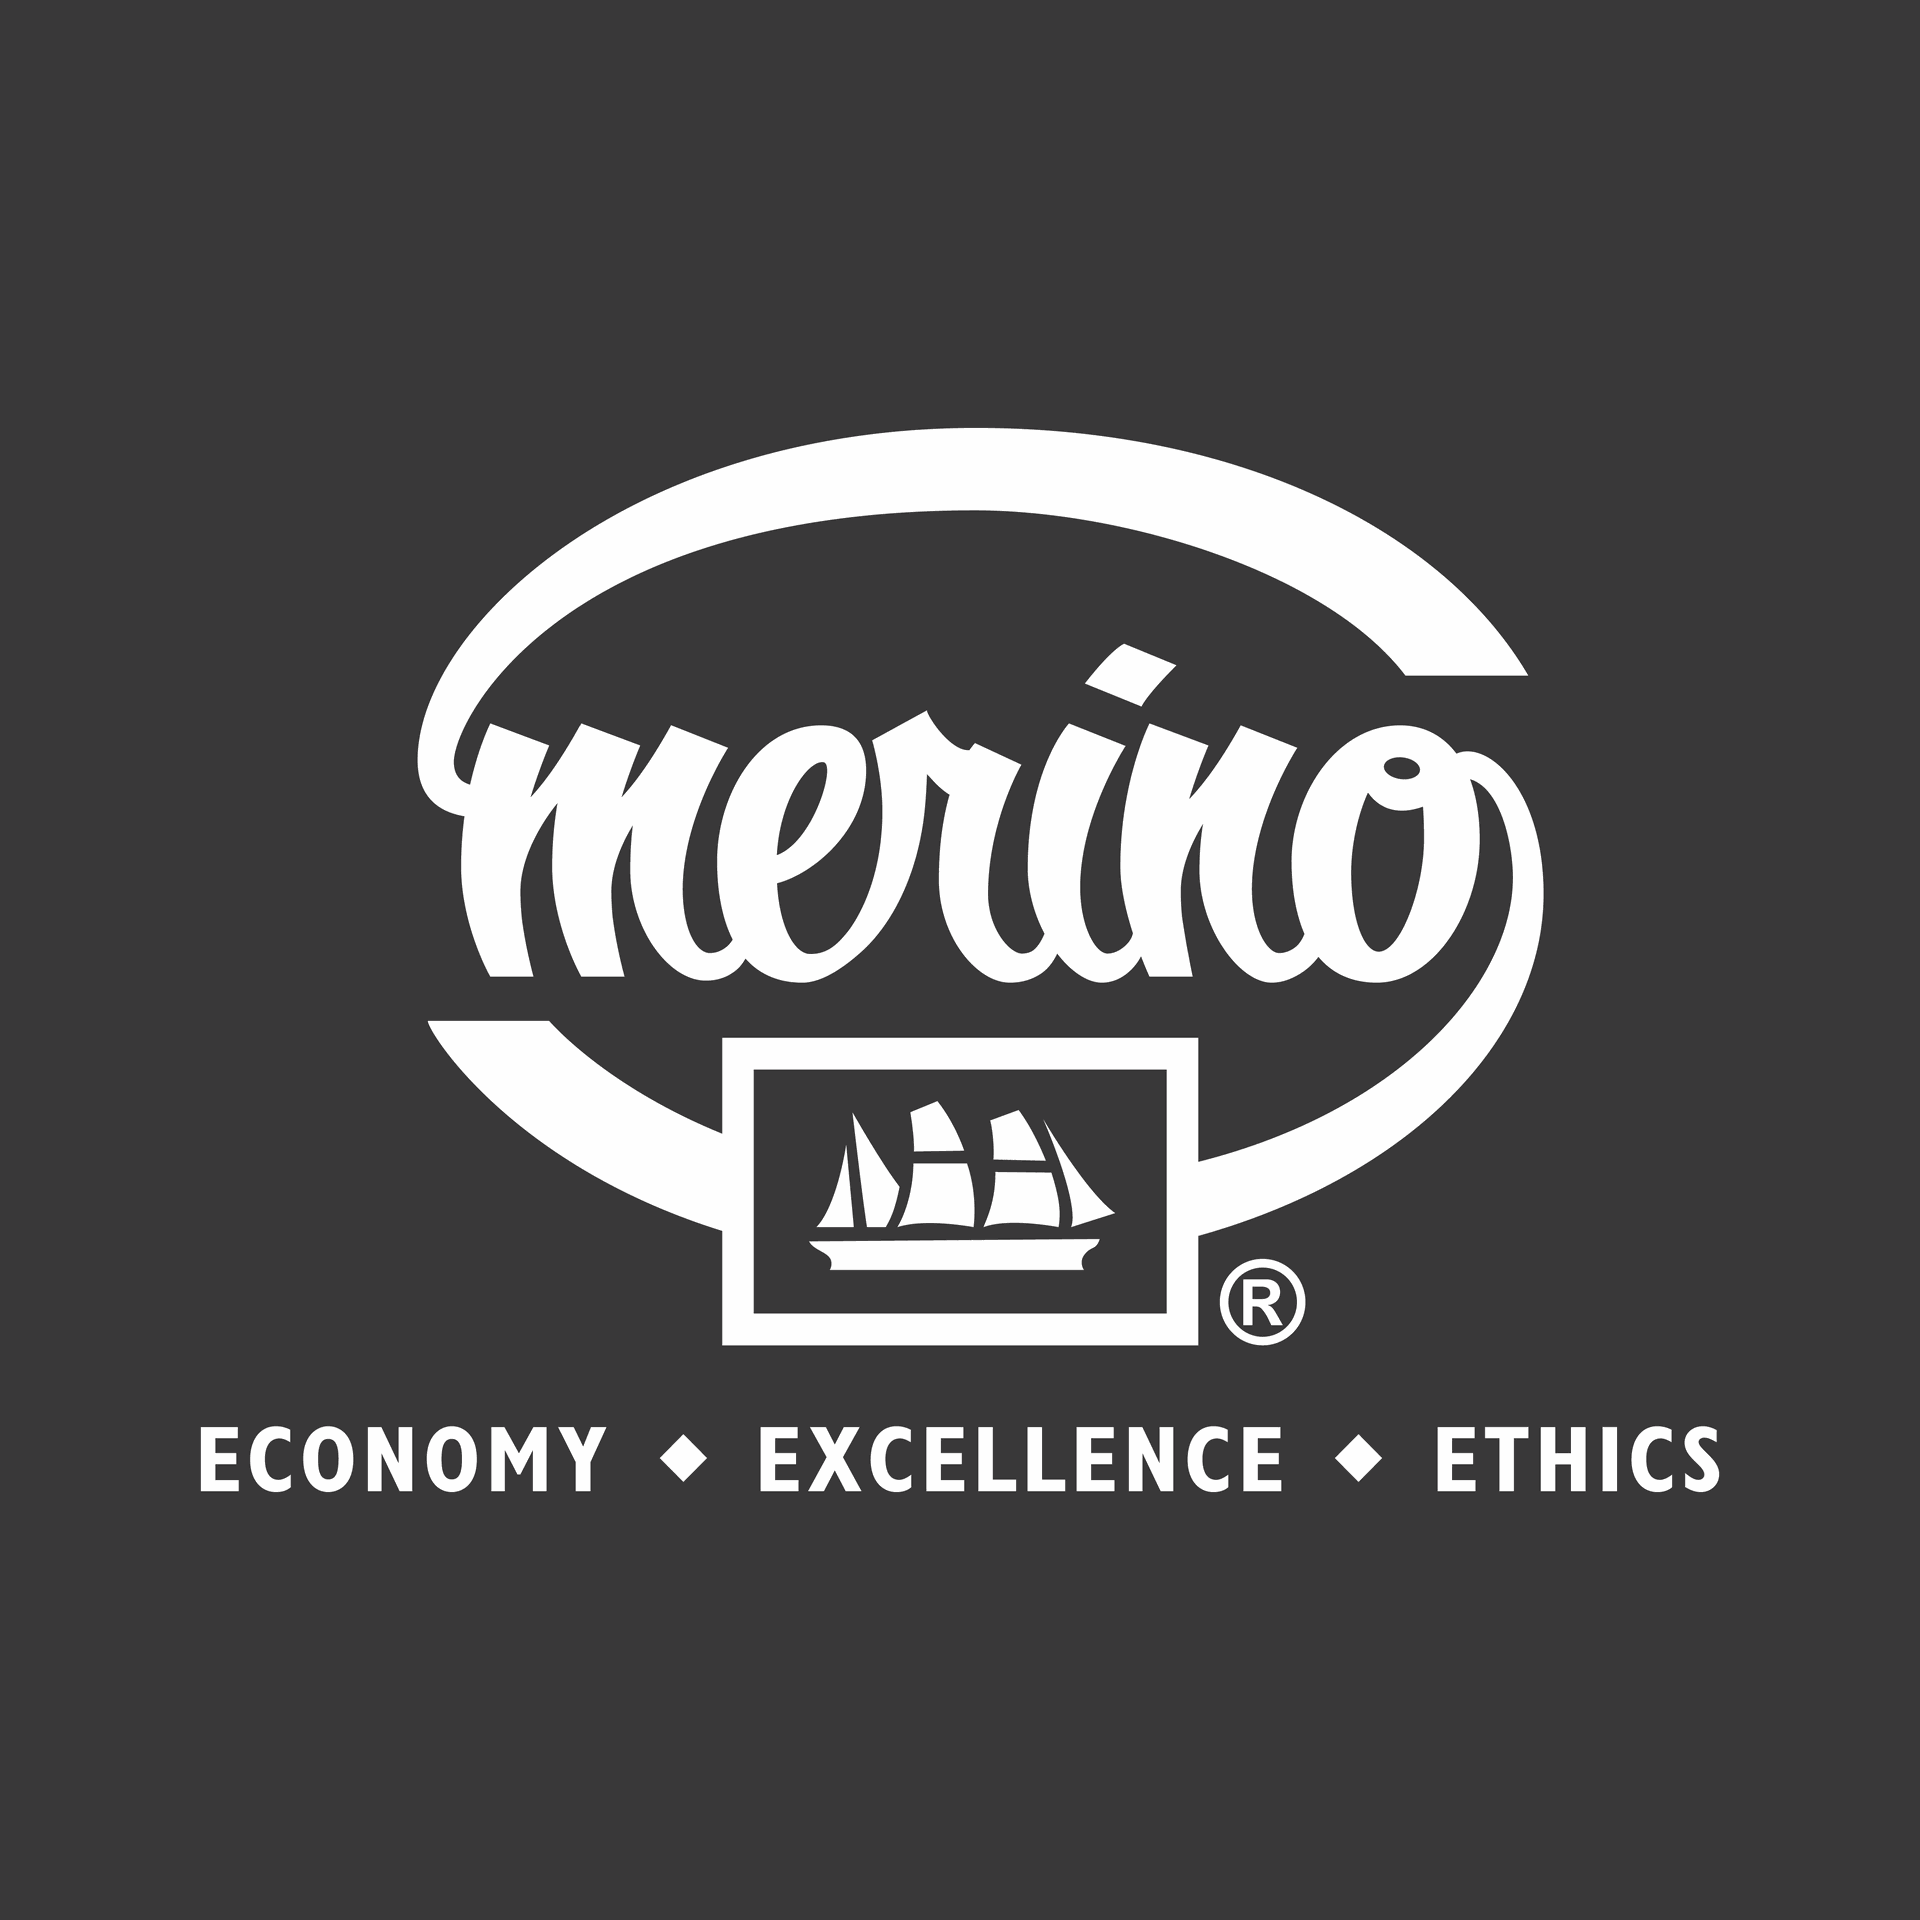 Brand: Merino Laminates